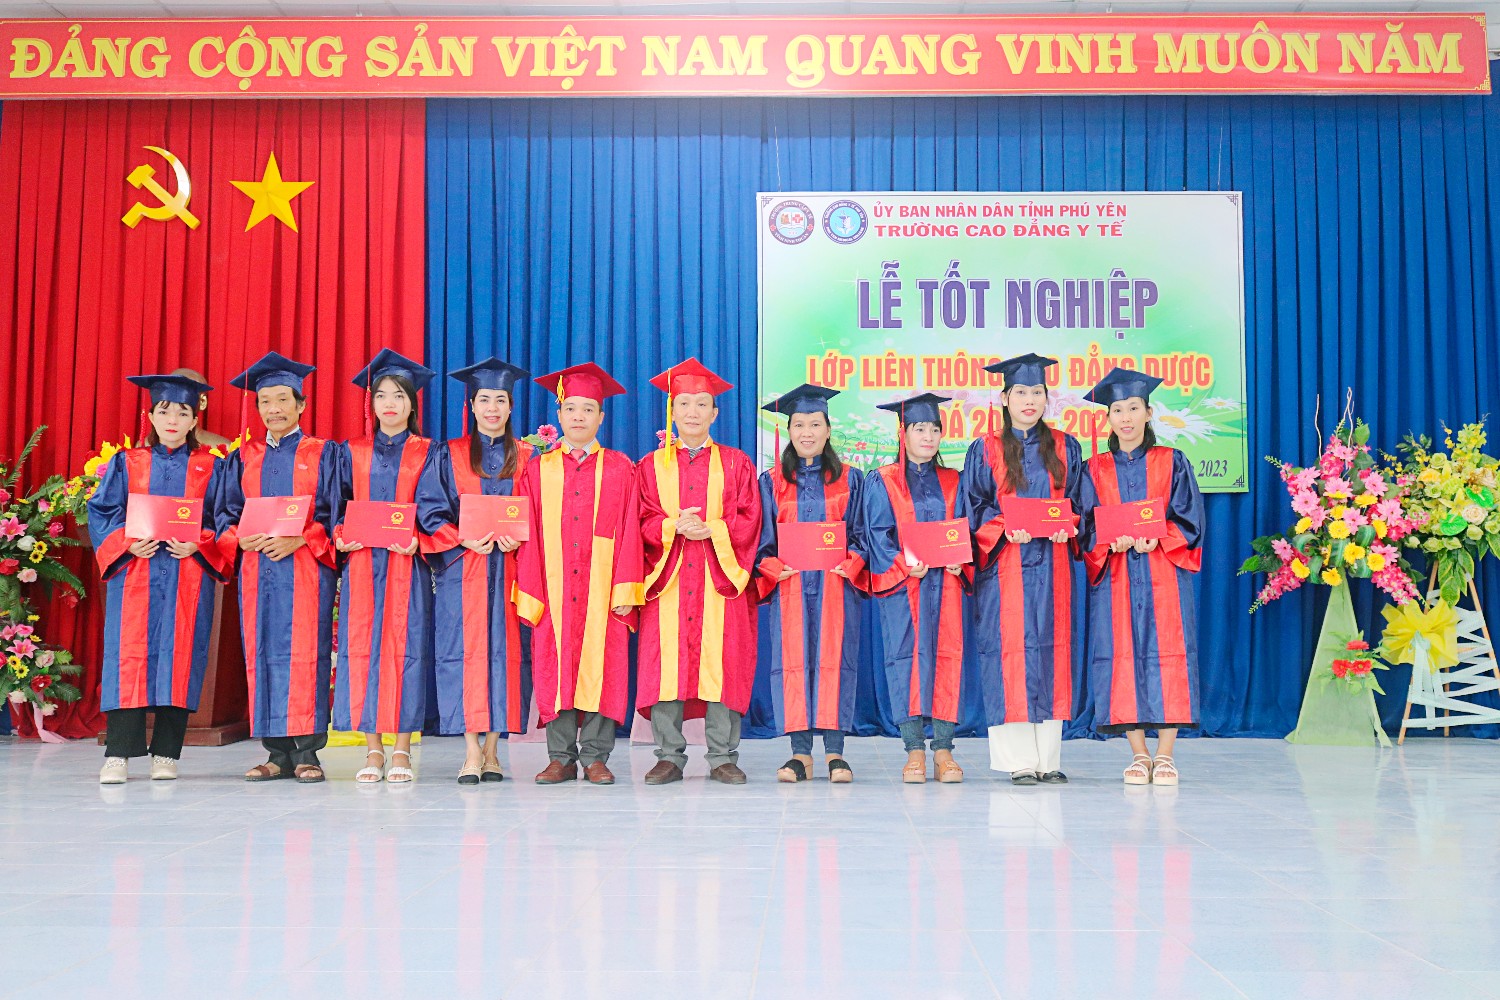 Lễ công nhận và trao bằng tốt nghiệp lớp liên kết Ninh Thuận (2020 - 2022)